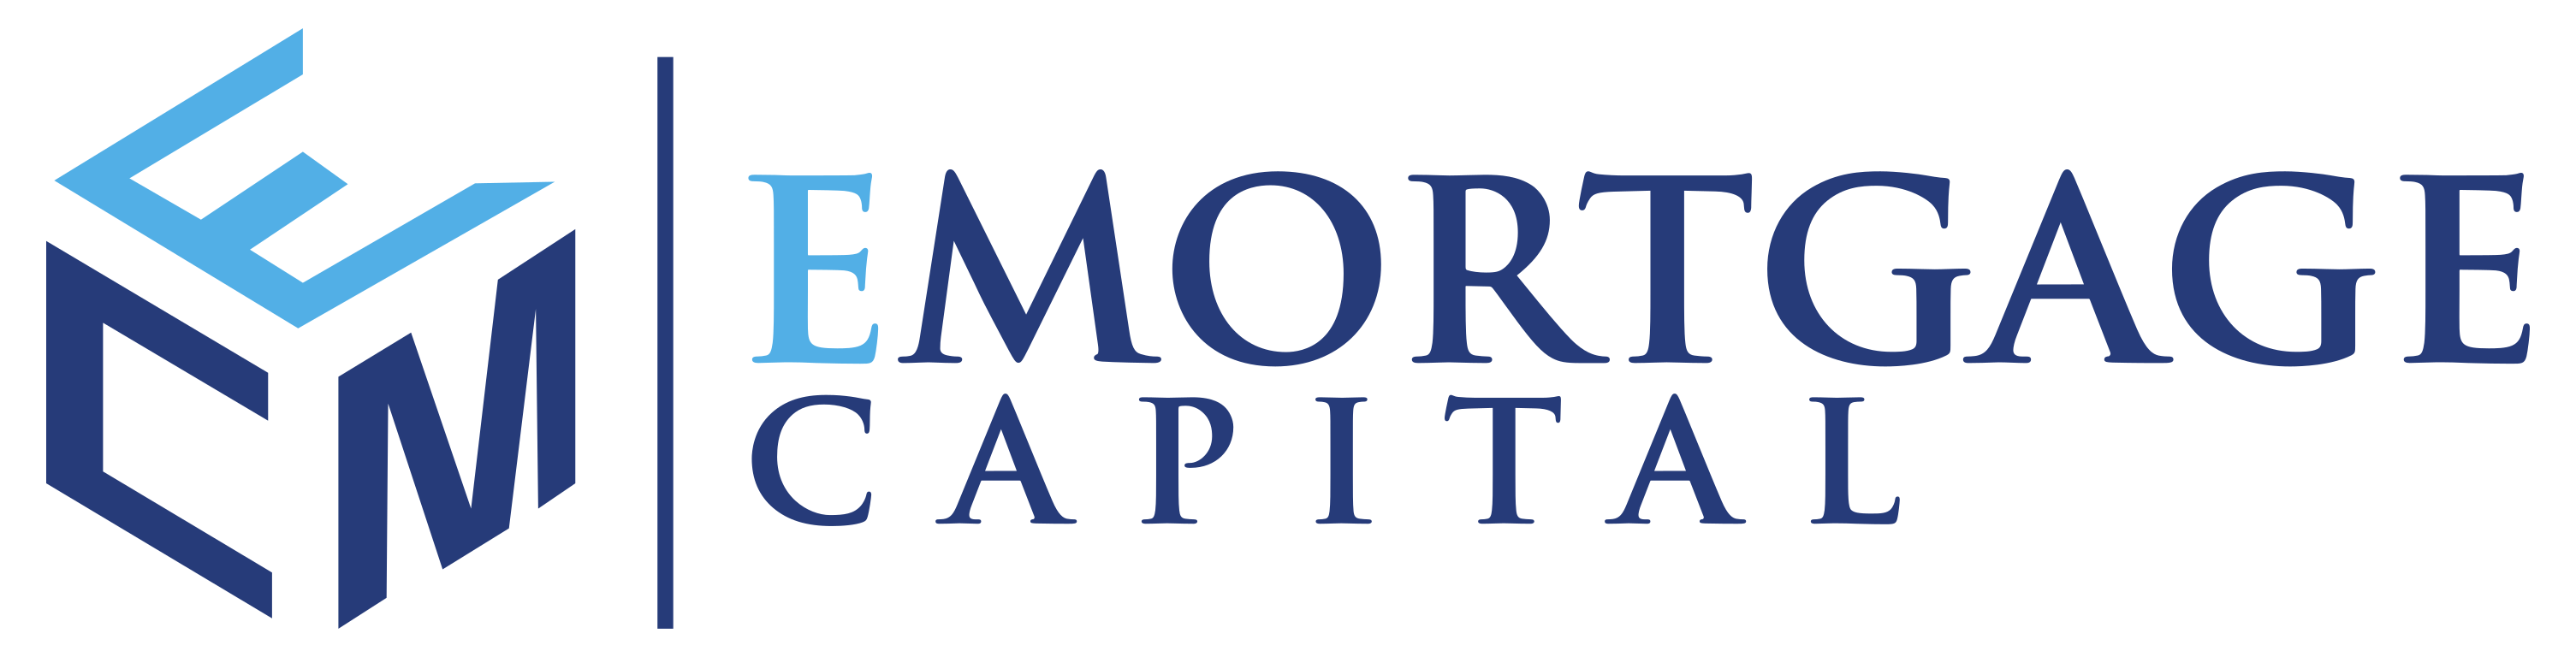 E Mortgage Capital, Inc